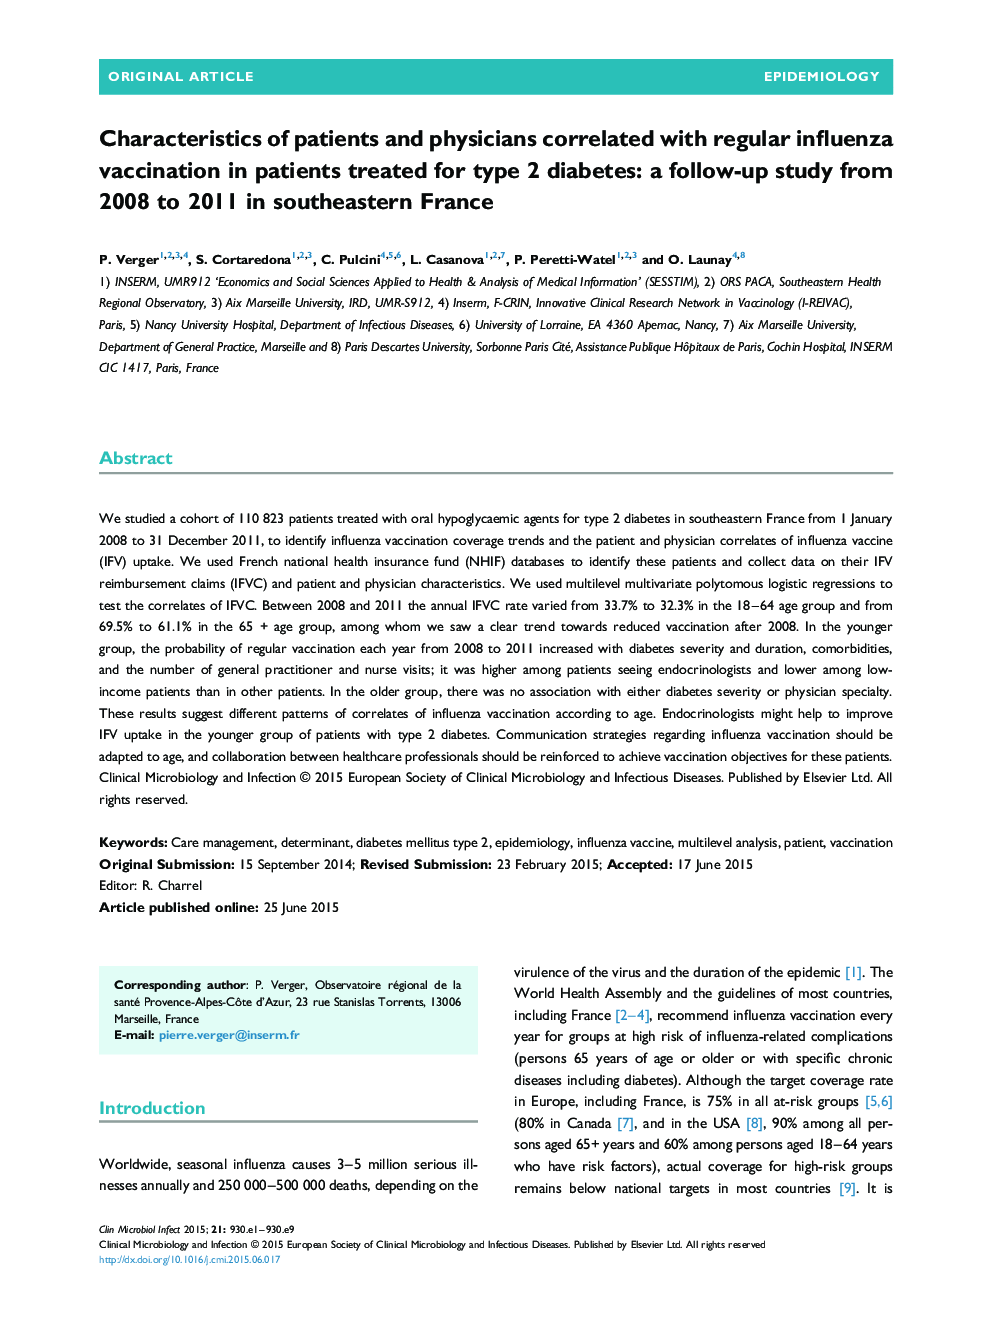 خصوصیات بیماران و پزشکان با واکسیناسیون منظم آنفولانزا در بیماران تحت درمان با دیابت نوع 2: یک مطالعه پیگیری در سالهای 2008 تا 2011 در جنوب شرقی فرانسه 